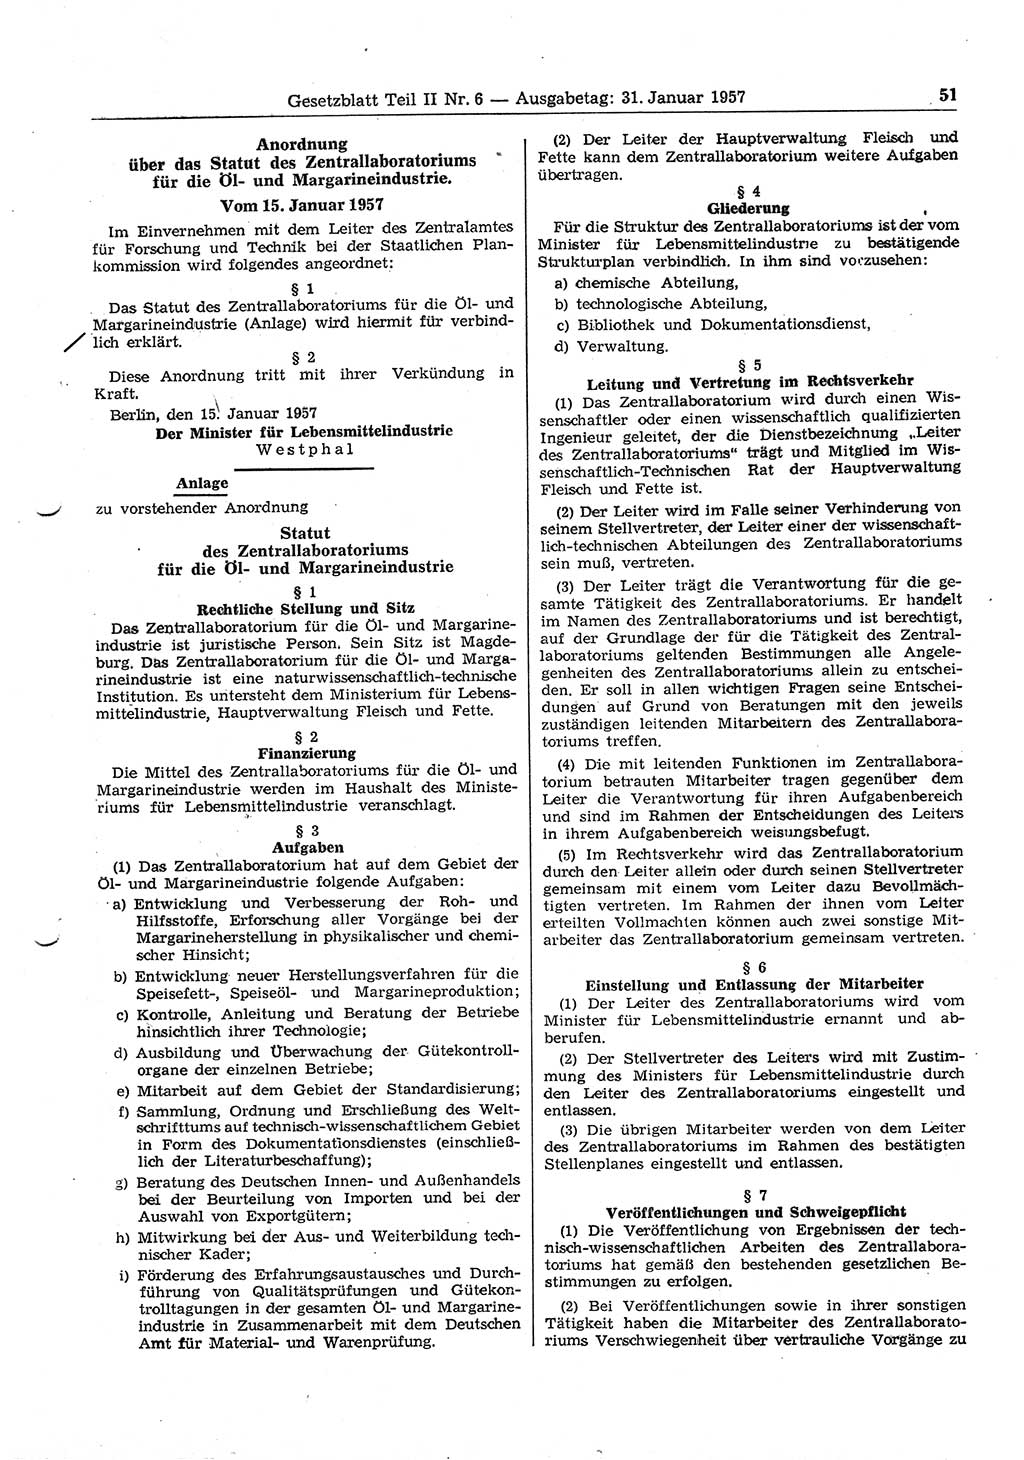 Gesetzblatt (GBl.) der Deutschen Demokratischen Republik (DDR) Teil ⅠⅠ 1957, Seite 51 (GBl. DDR ⅠⅠ 1957, S. 51)